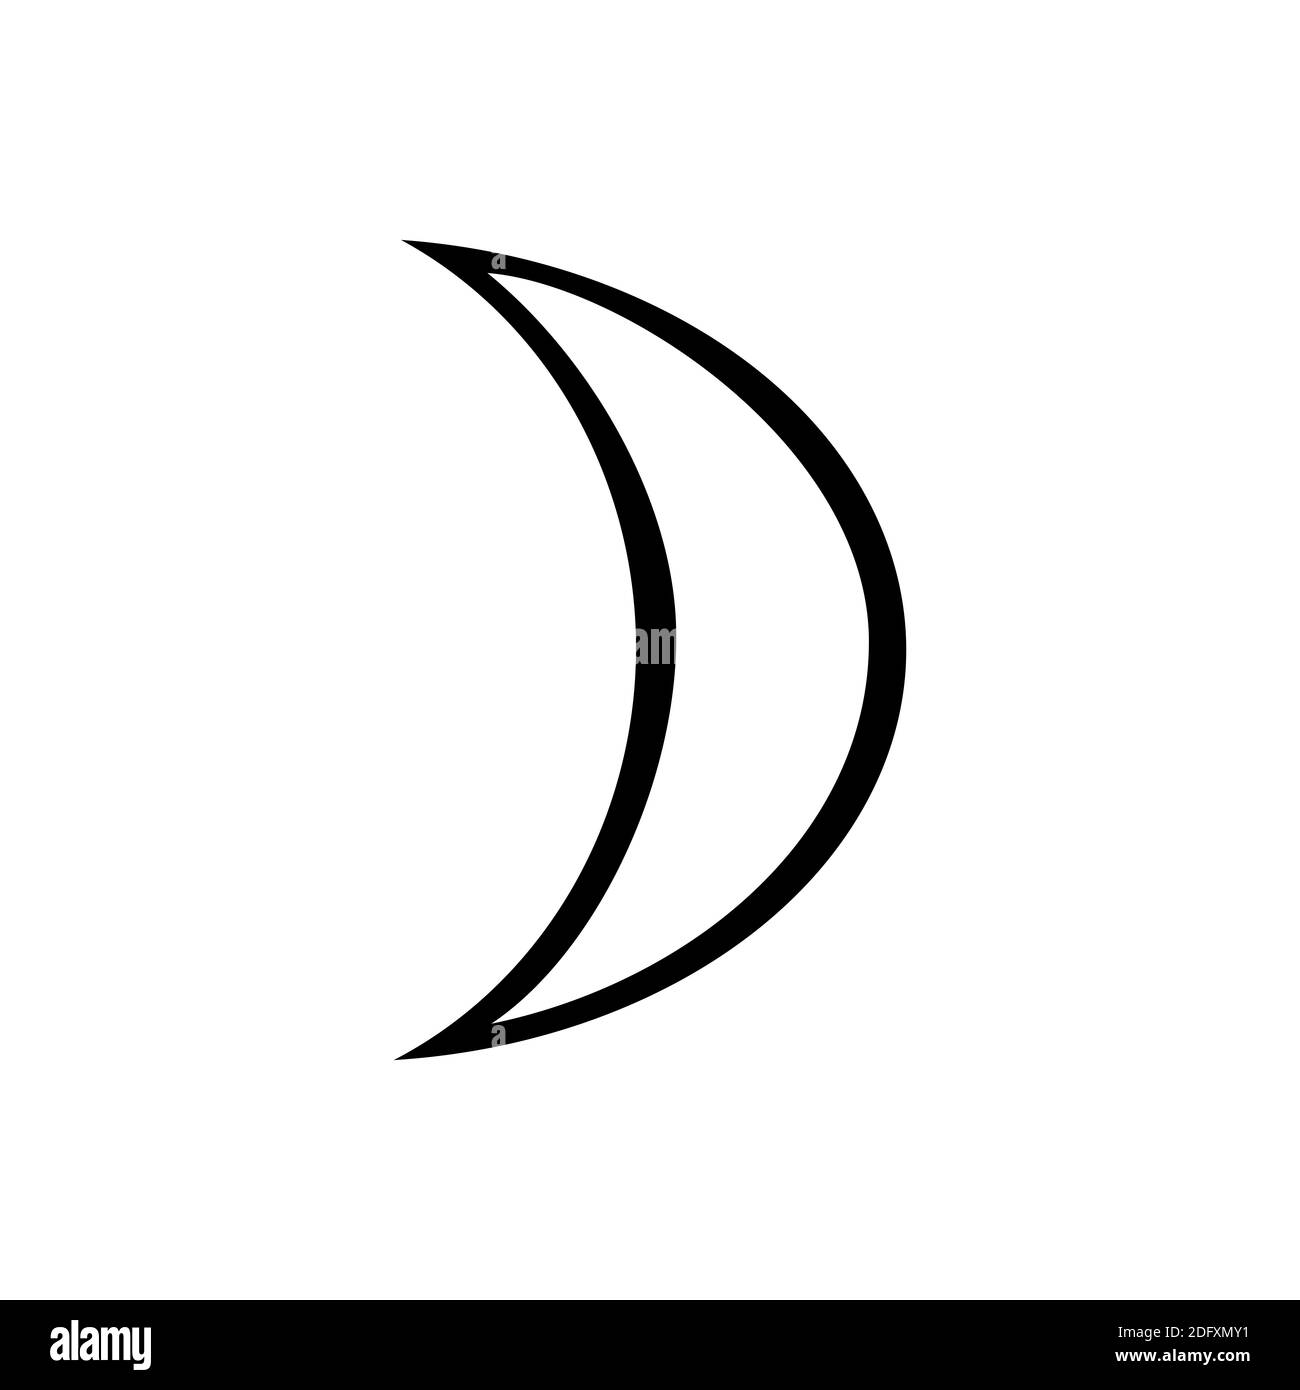 le symbole de la lune, un des symboles de l'alchimie. Icône de lune noire et blanche. Banque D'Images